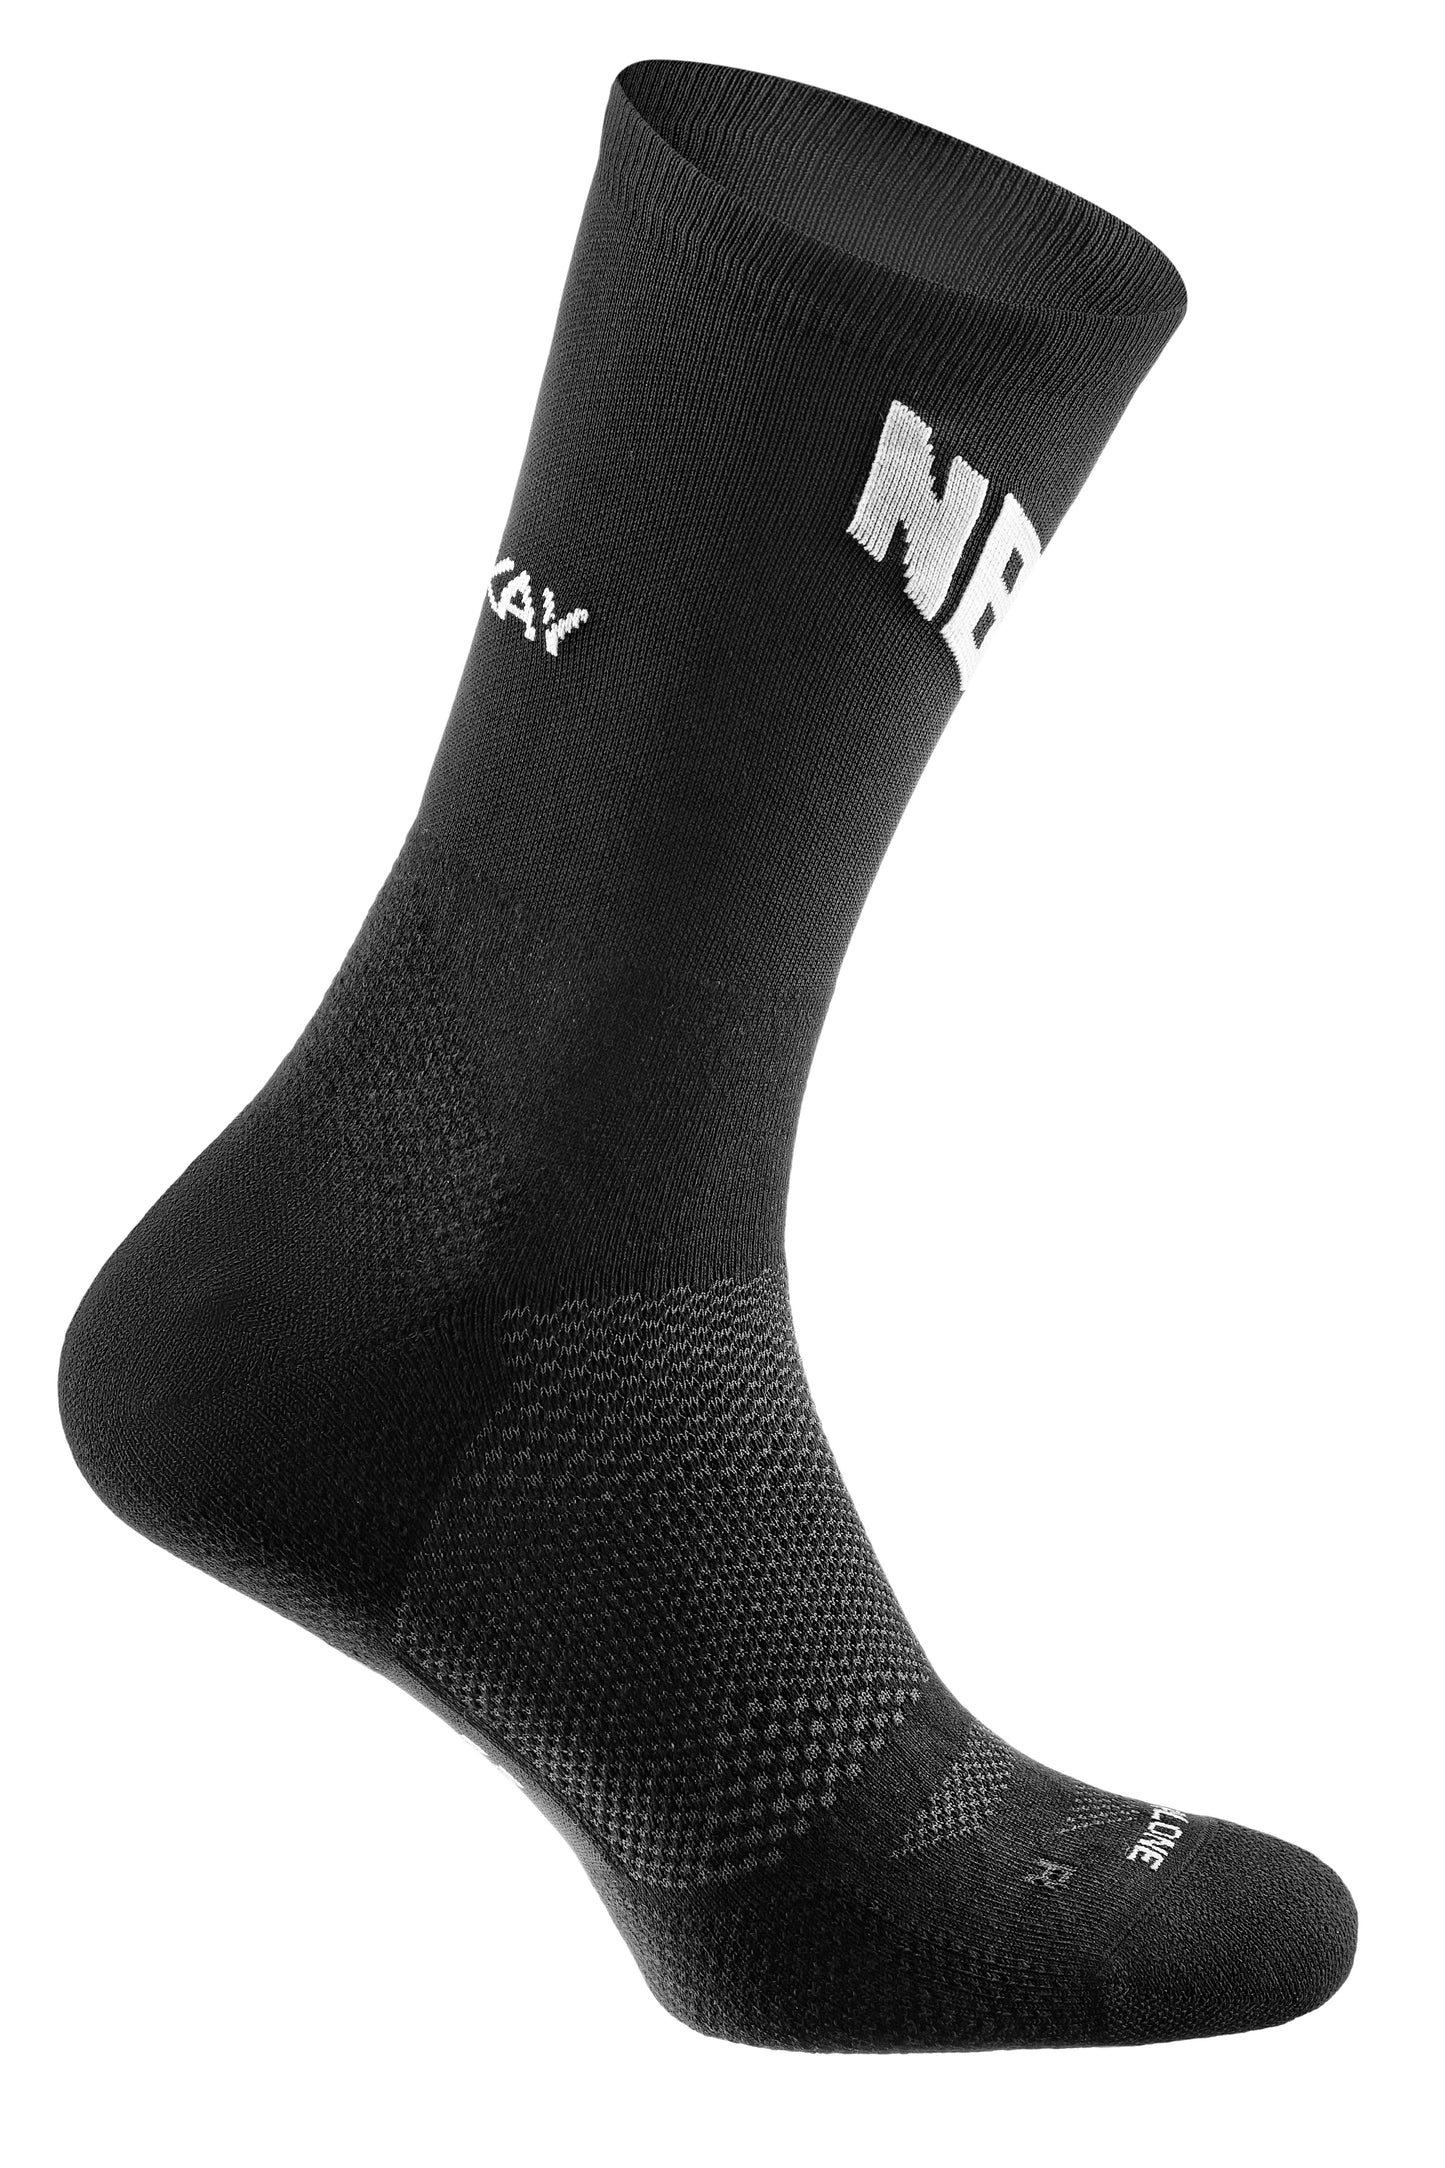 NBRO Run Crew Socks